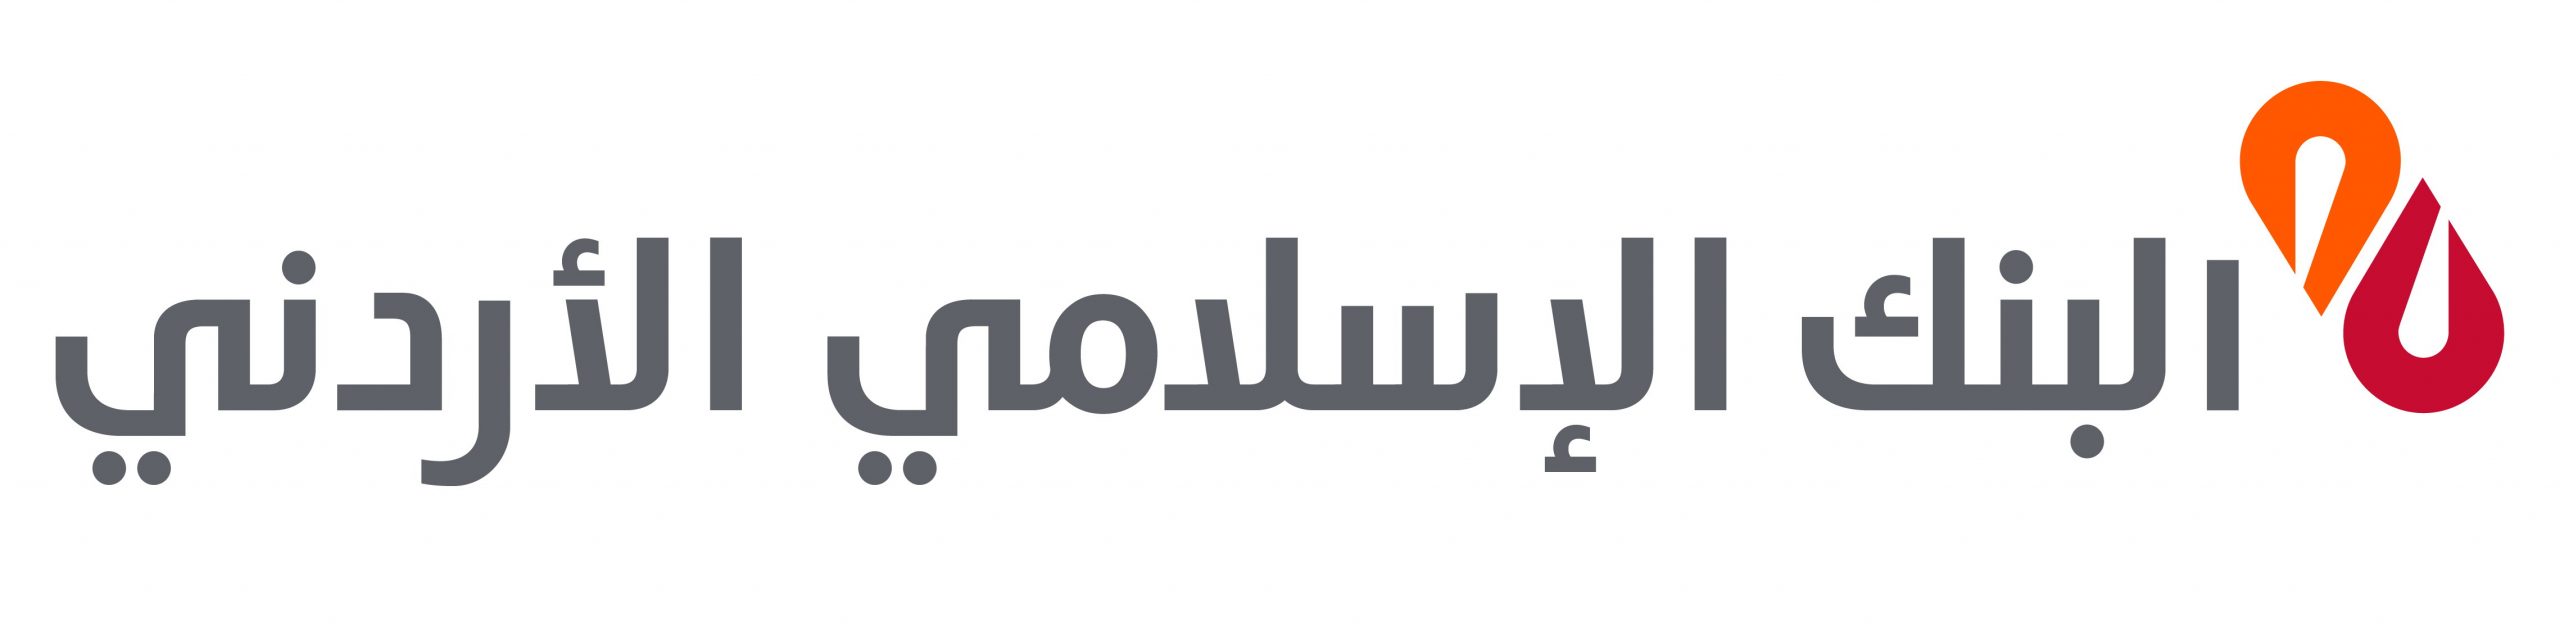 قروض البنك الإسلامي الأردني للبناء